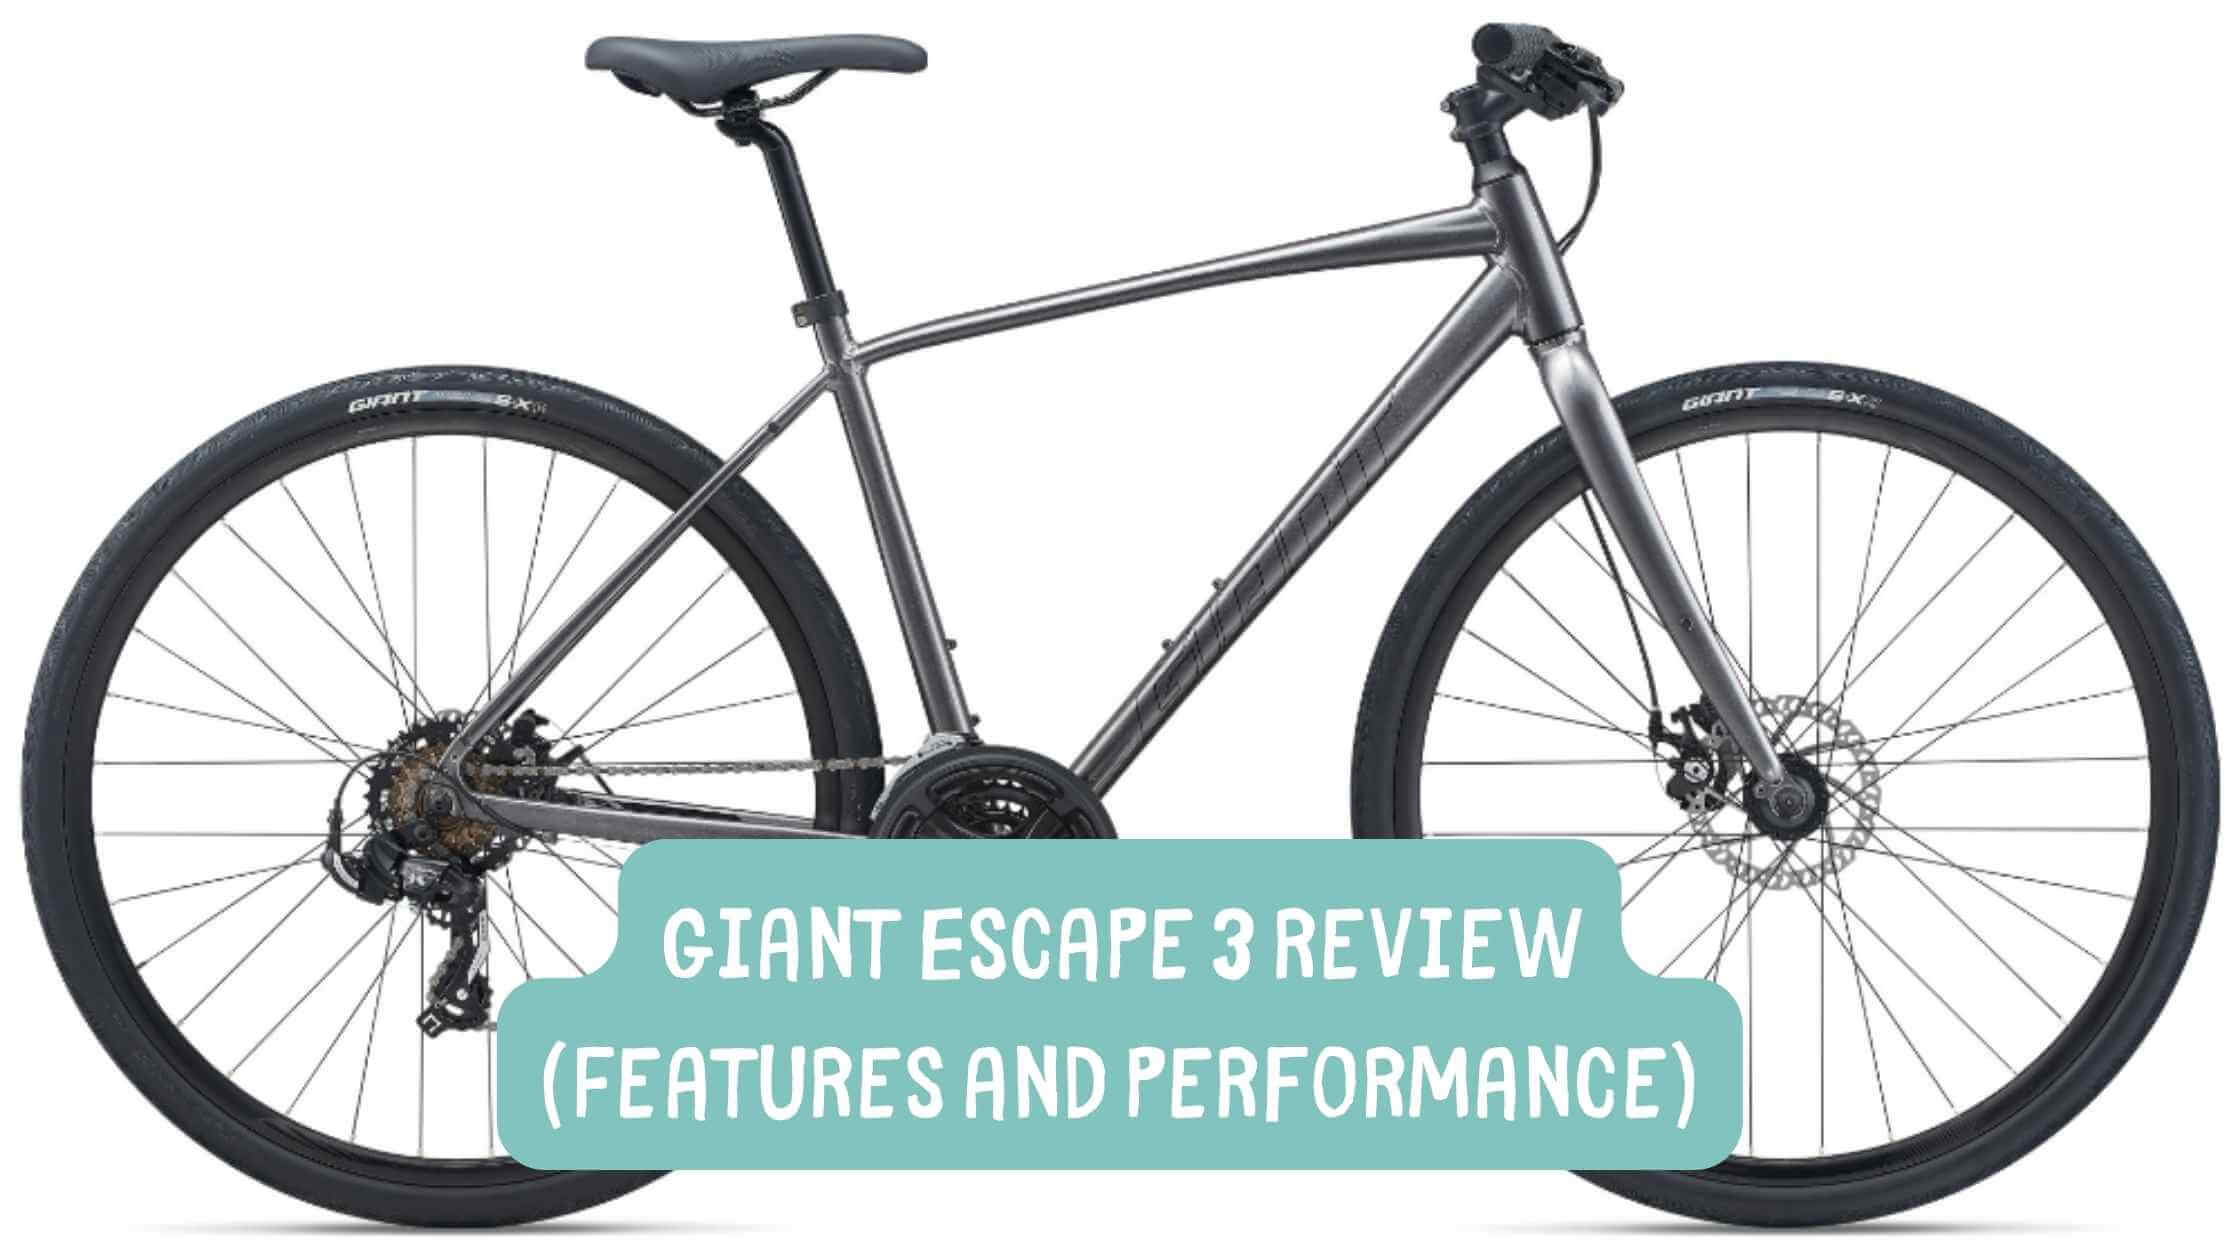 Giant Escape 3 Review